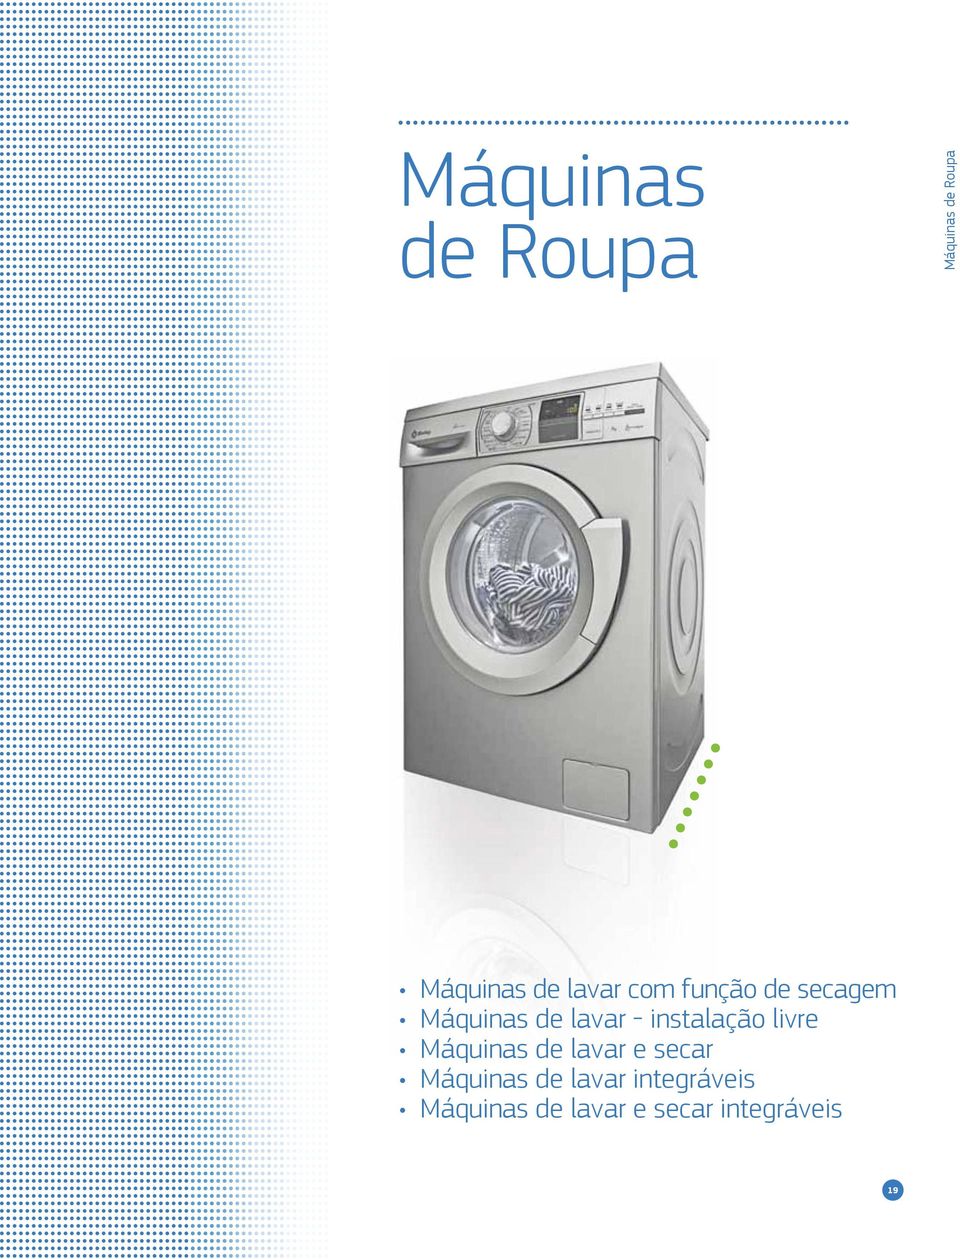 instalação livre Máquinas de lavar e secar Máquinas